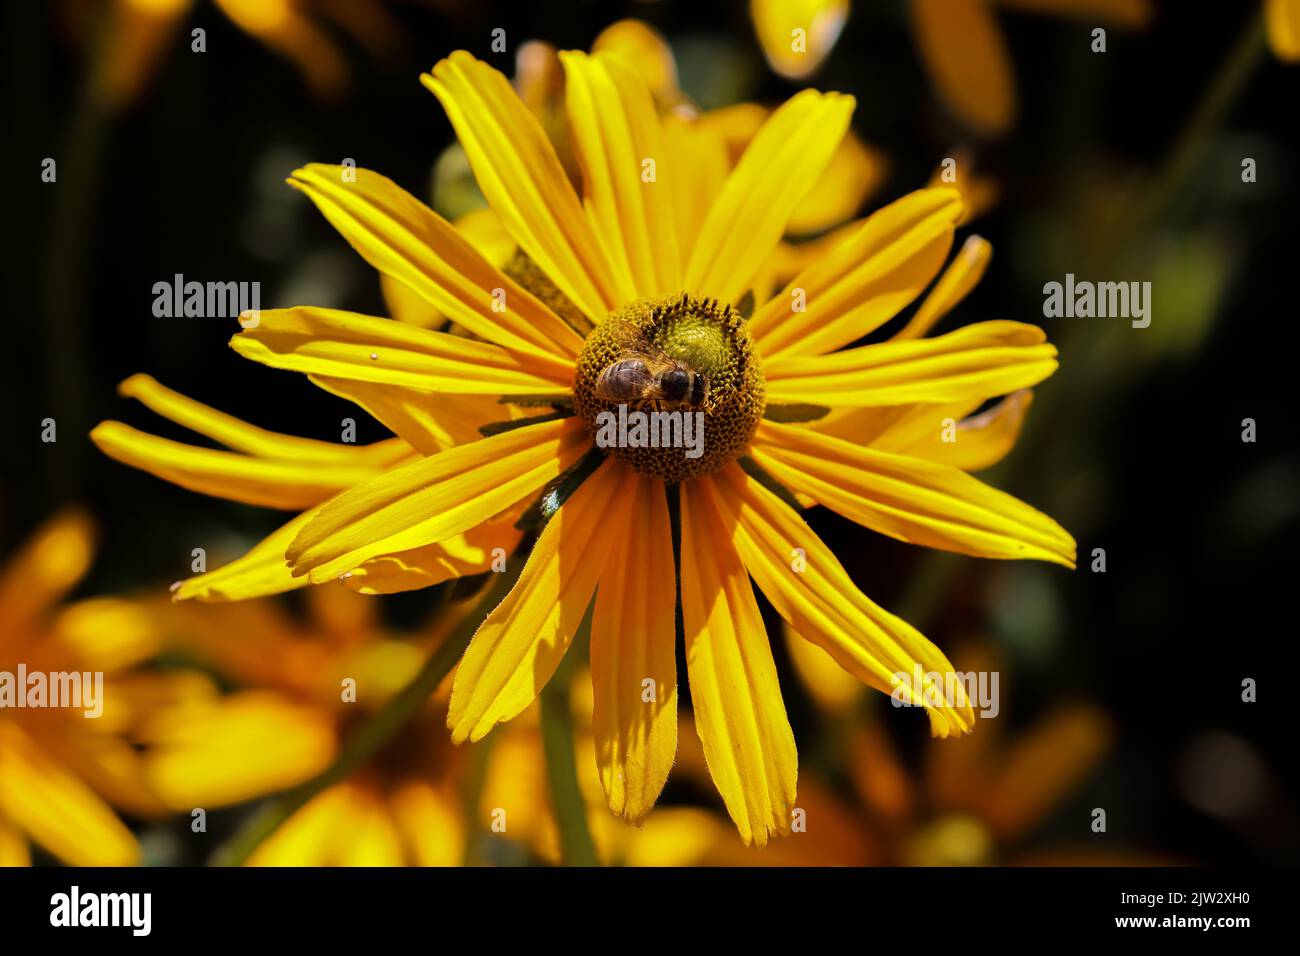 Fleurs jaunes vives, 'Rudbeckia hirta', 'Irish Eyes' ou 'Black Eyed Susan', isolées sur fond sombre. Dublin, Irlande Banque D'Images